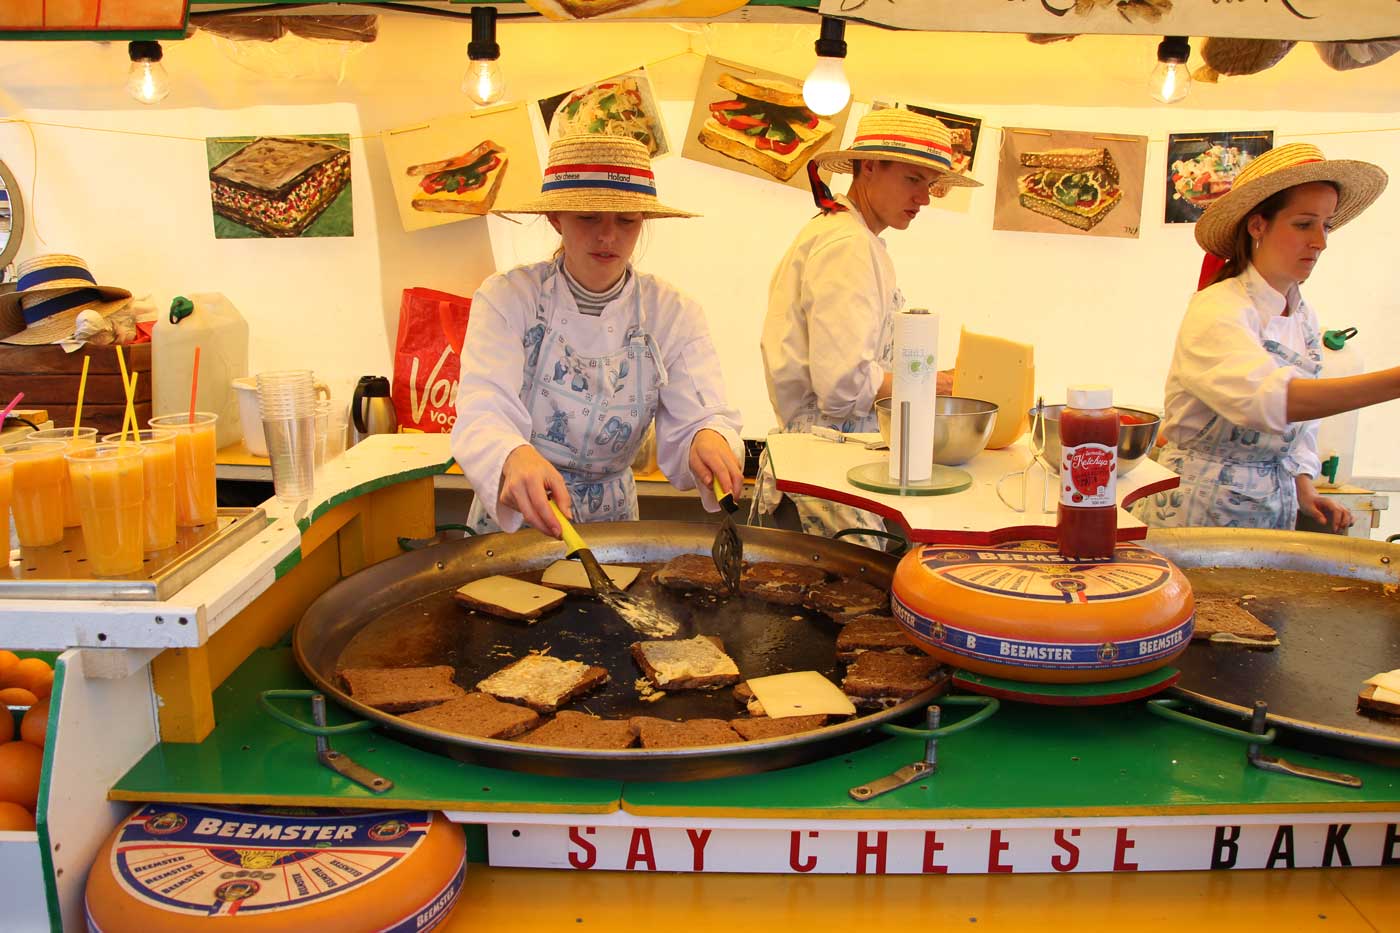 Девушки в канотье предлагают посетителям отведать сыр. На огромной сковороде поджаривают сыр и хлеб.